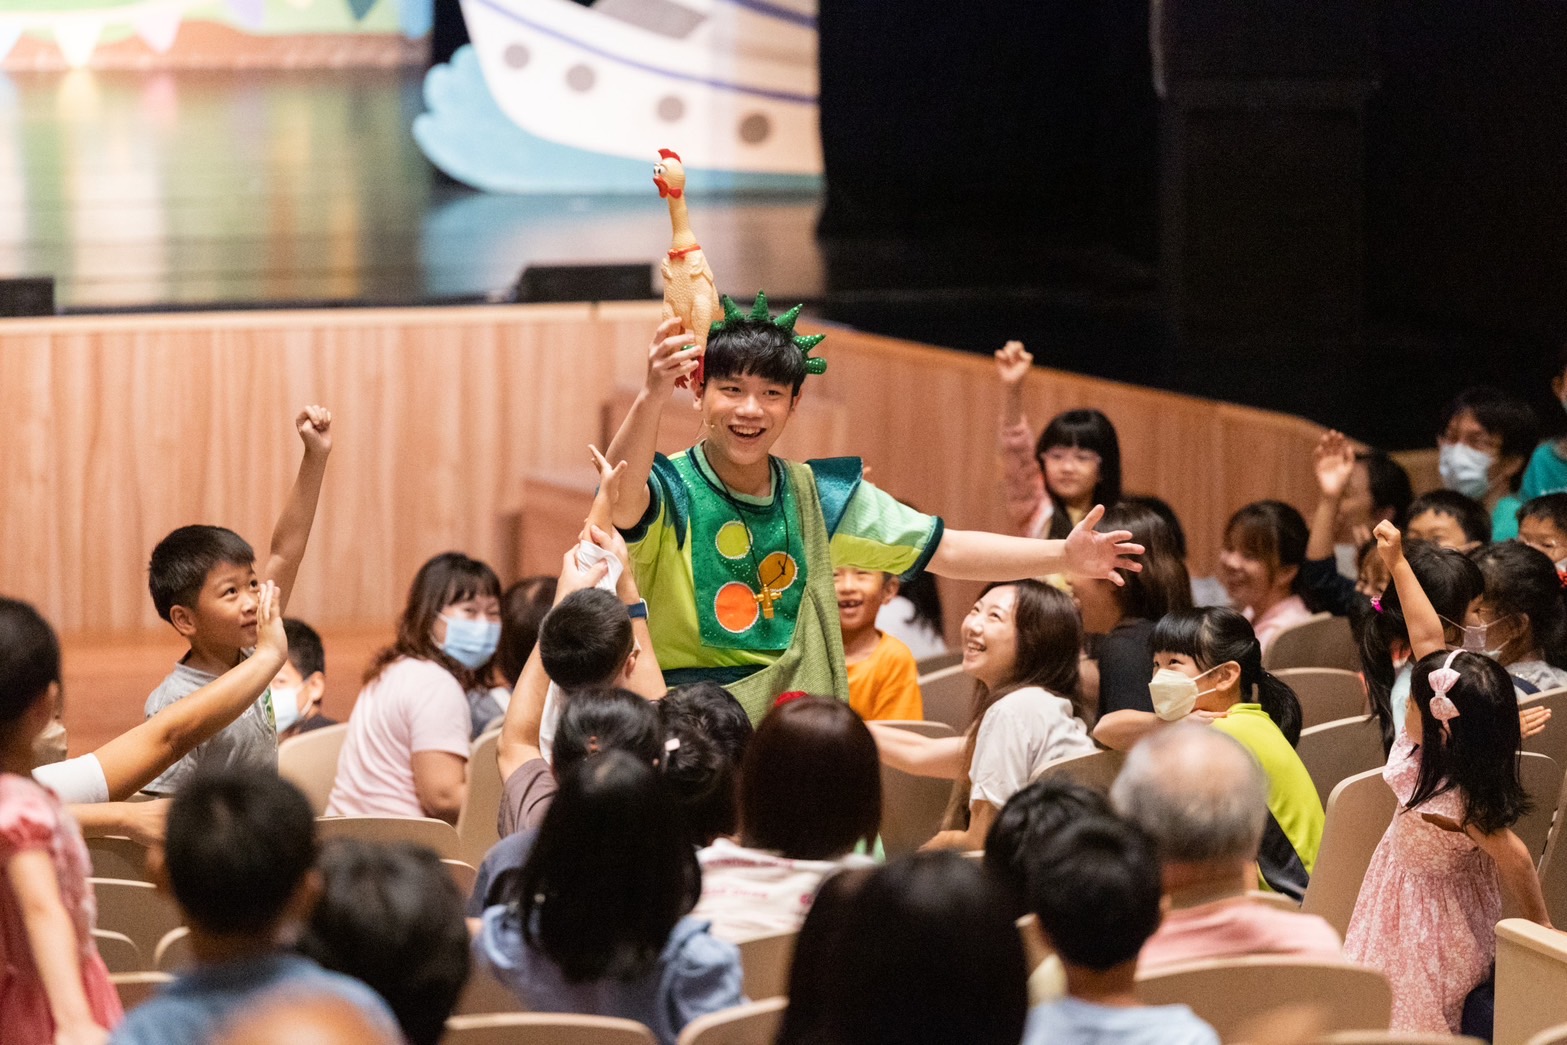  朱宗慶「豆莢寶寶兒童音樂會」打破舞台觀眾席界線互動推進劇情 